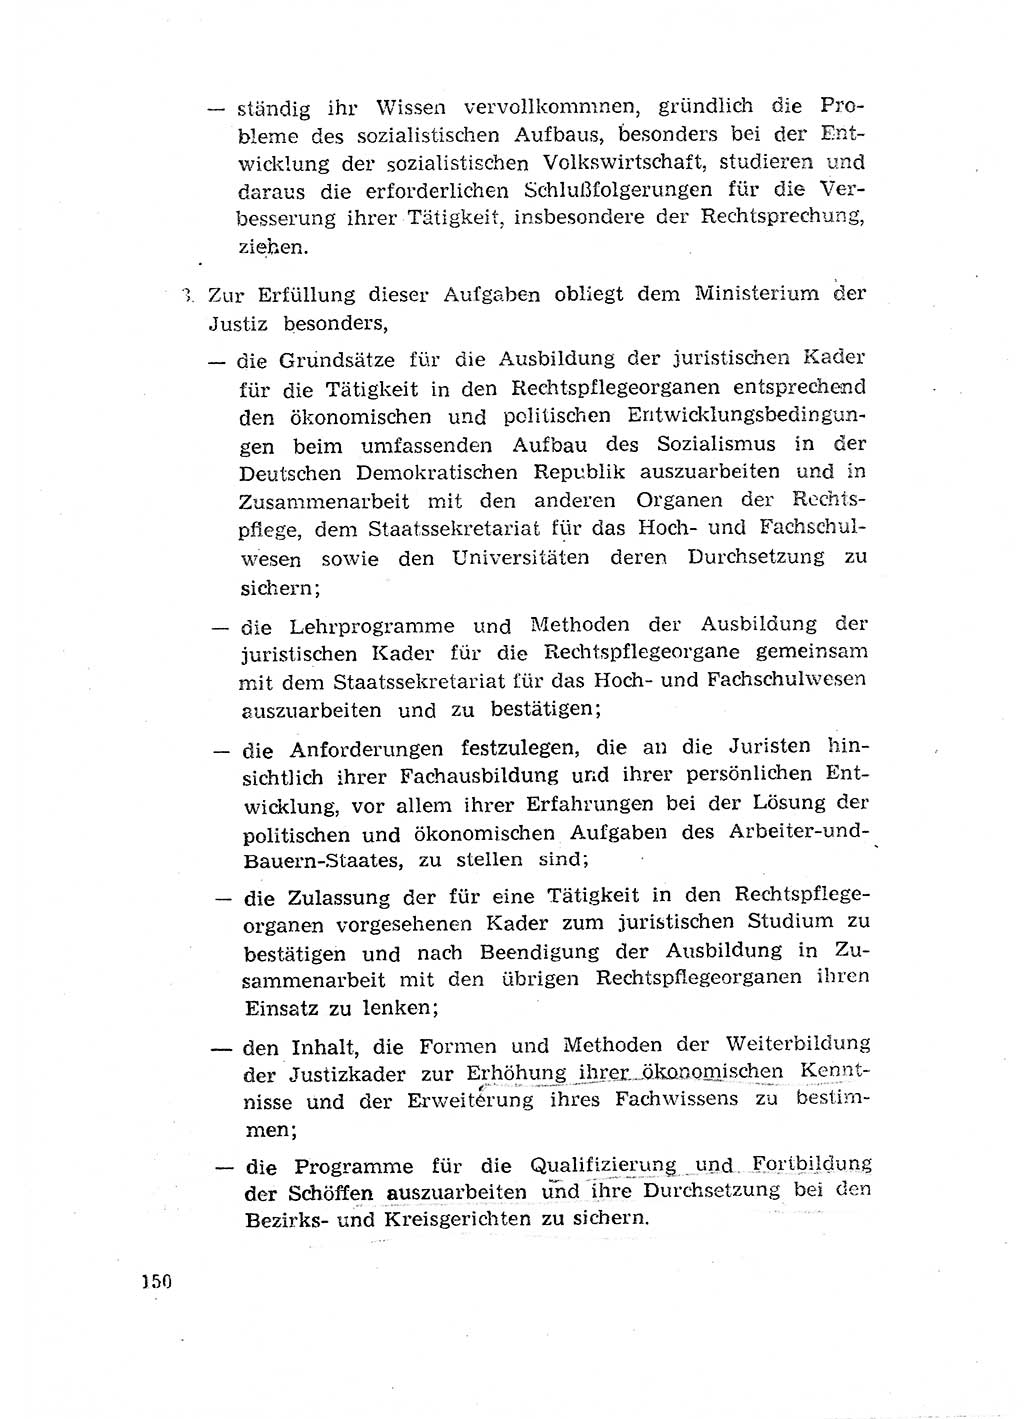 Rechtspflegeerlaß [Deutsche Demokratische Republik (DDR)] 1963, Seite 150 (R.-Pfl.-Erl. DDR 1963, S. 150)